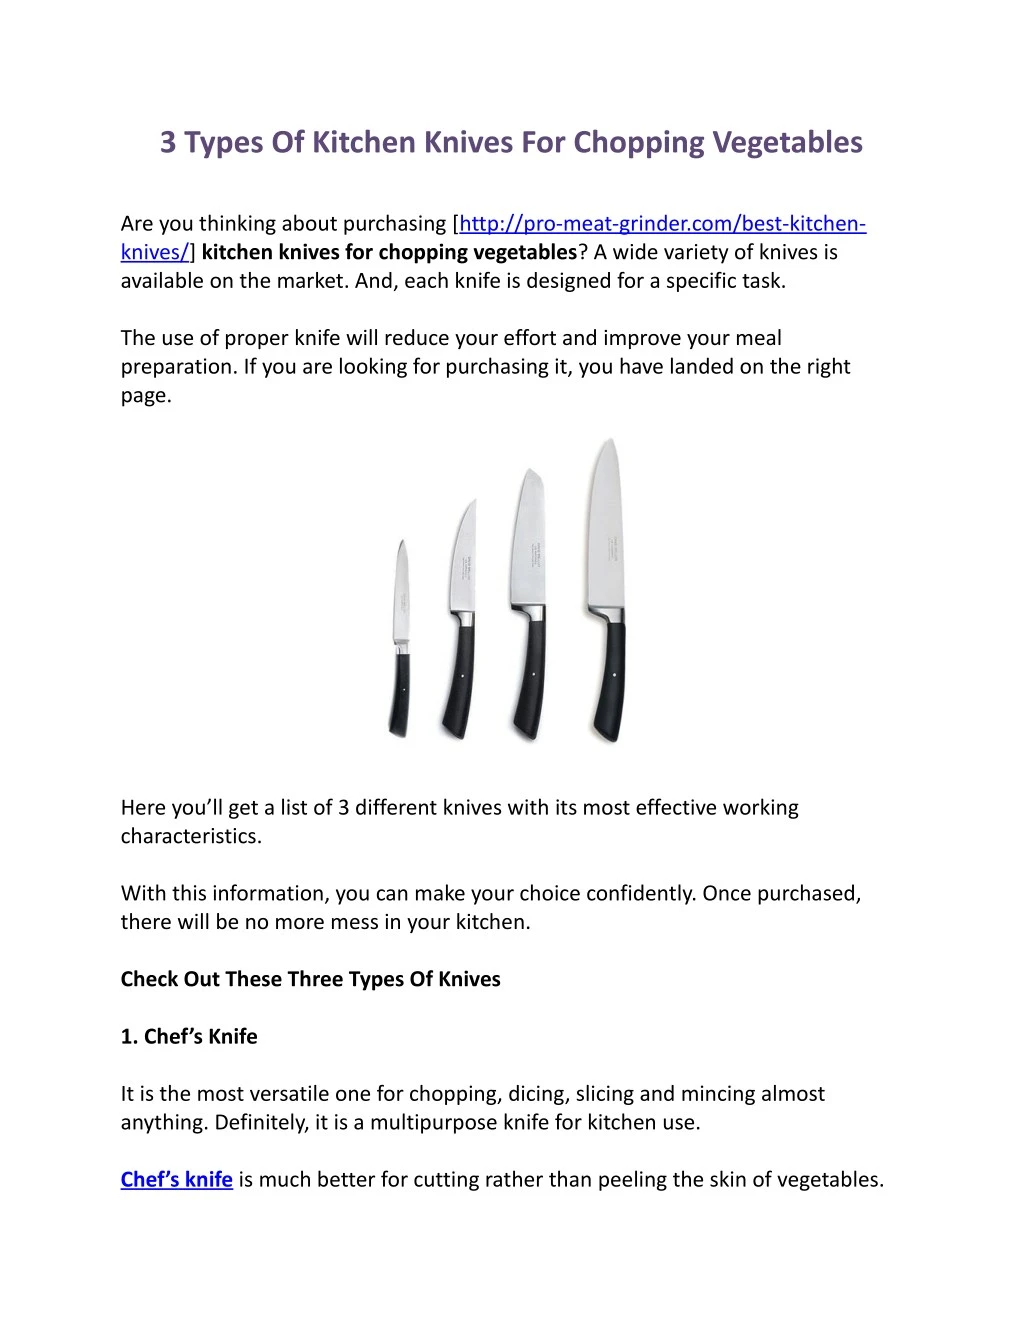 https://cdn4.slideserve.com/7760281/3-types-of-kitchen-knives-for-chopping-vegetables-n.jpg